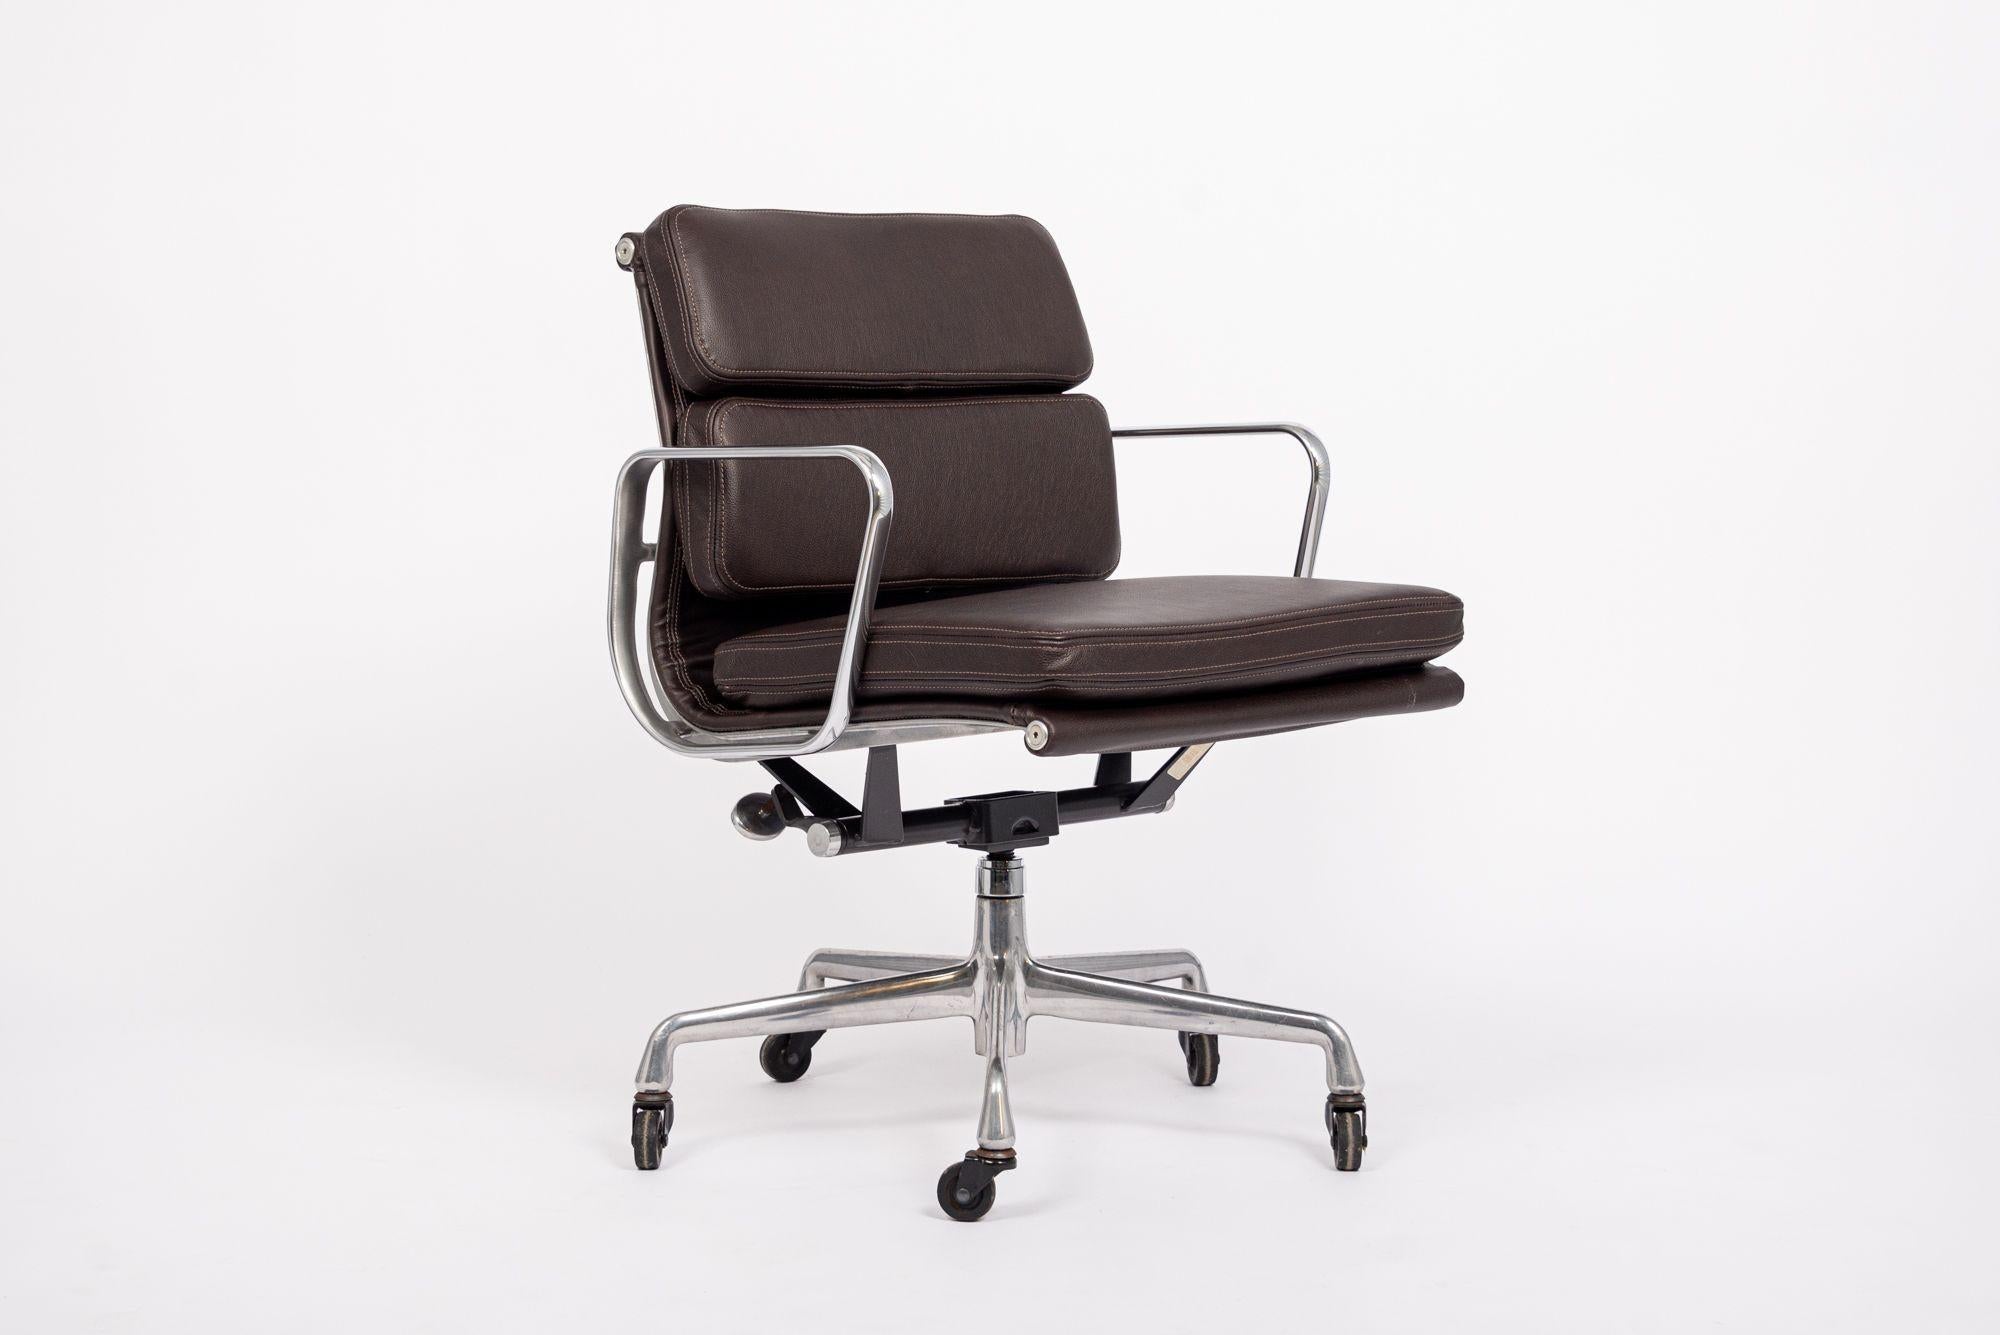 Cette authentique chaise de bureau Eames for Herman Miller Soft Pad Management Height en cuir brun noir de la Collection Aluminium Group a été fabriquée dans les années 2000. Cette chaise de bureau classique et moderne du milieu du siècle a été